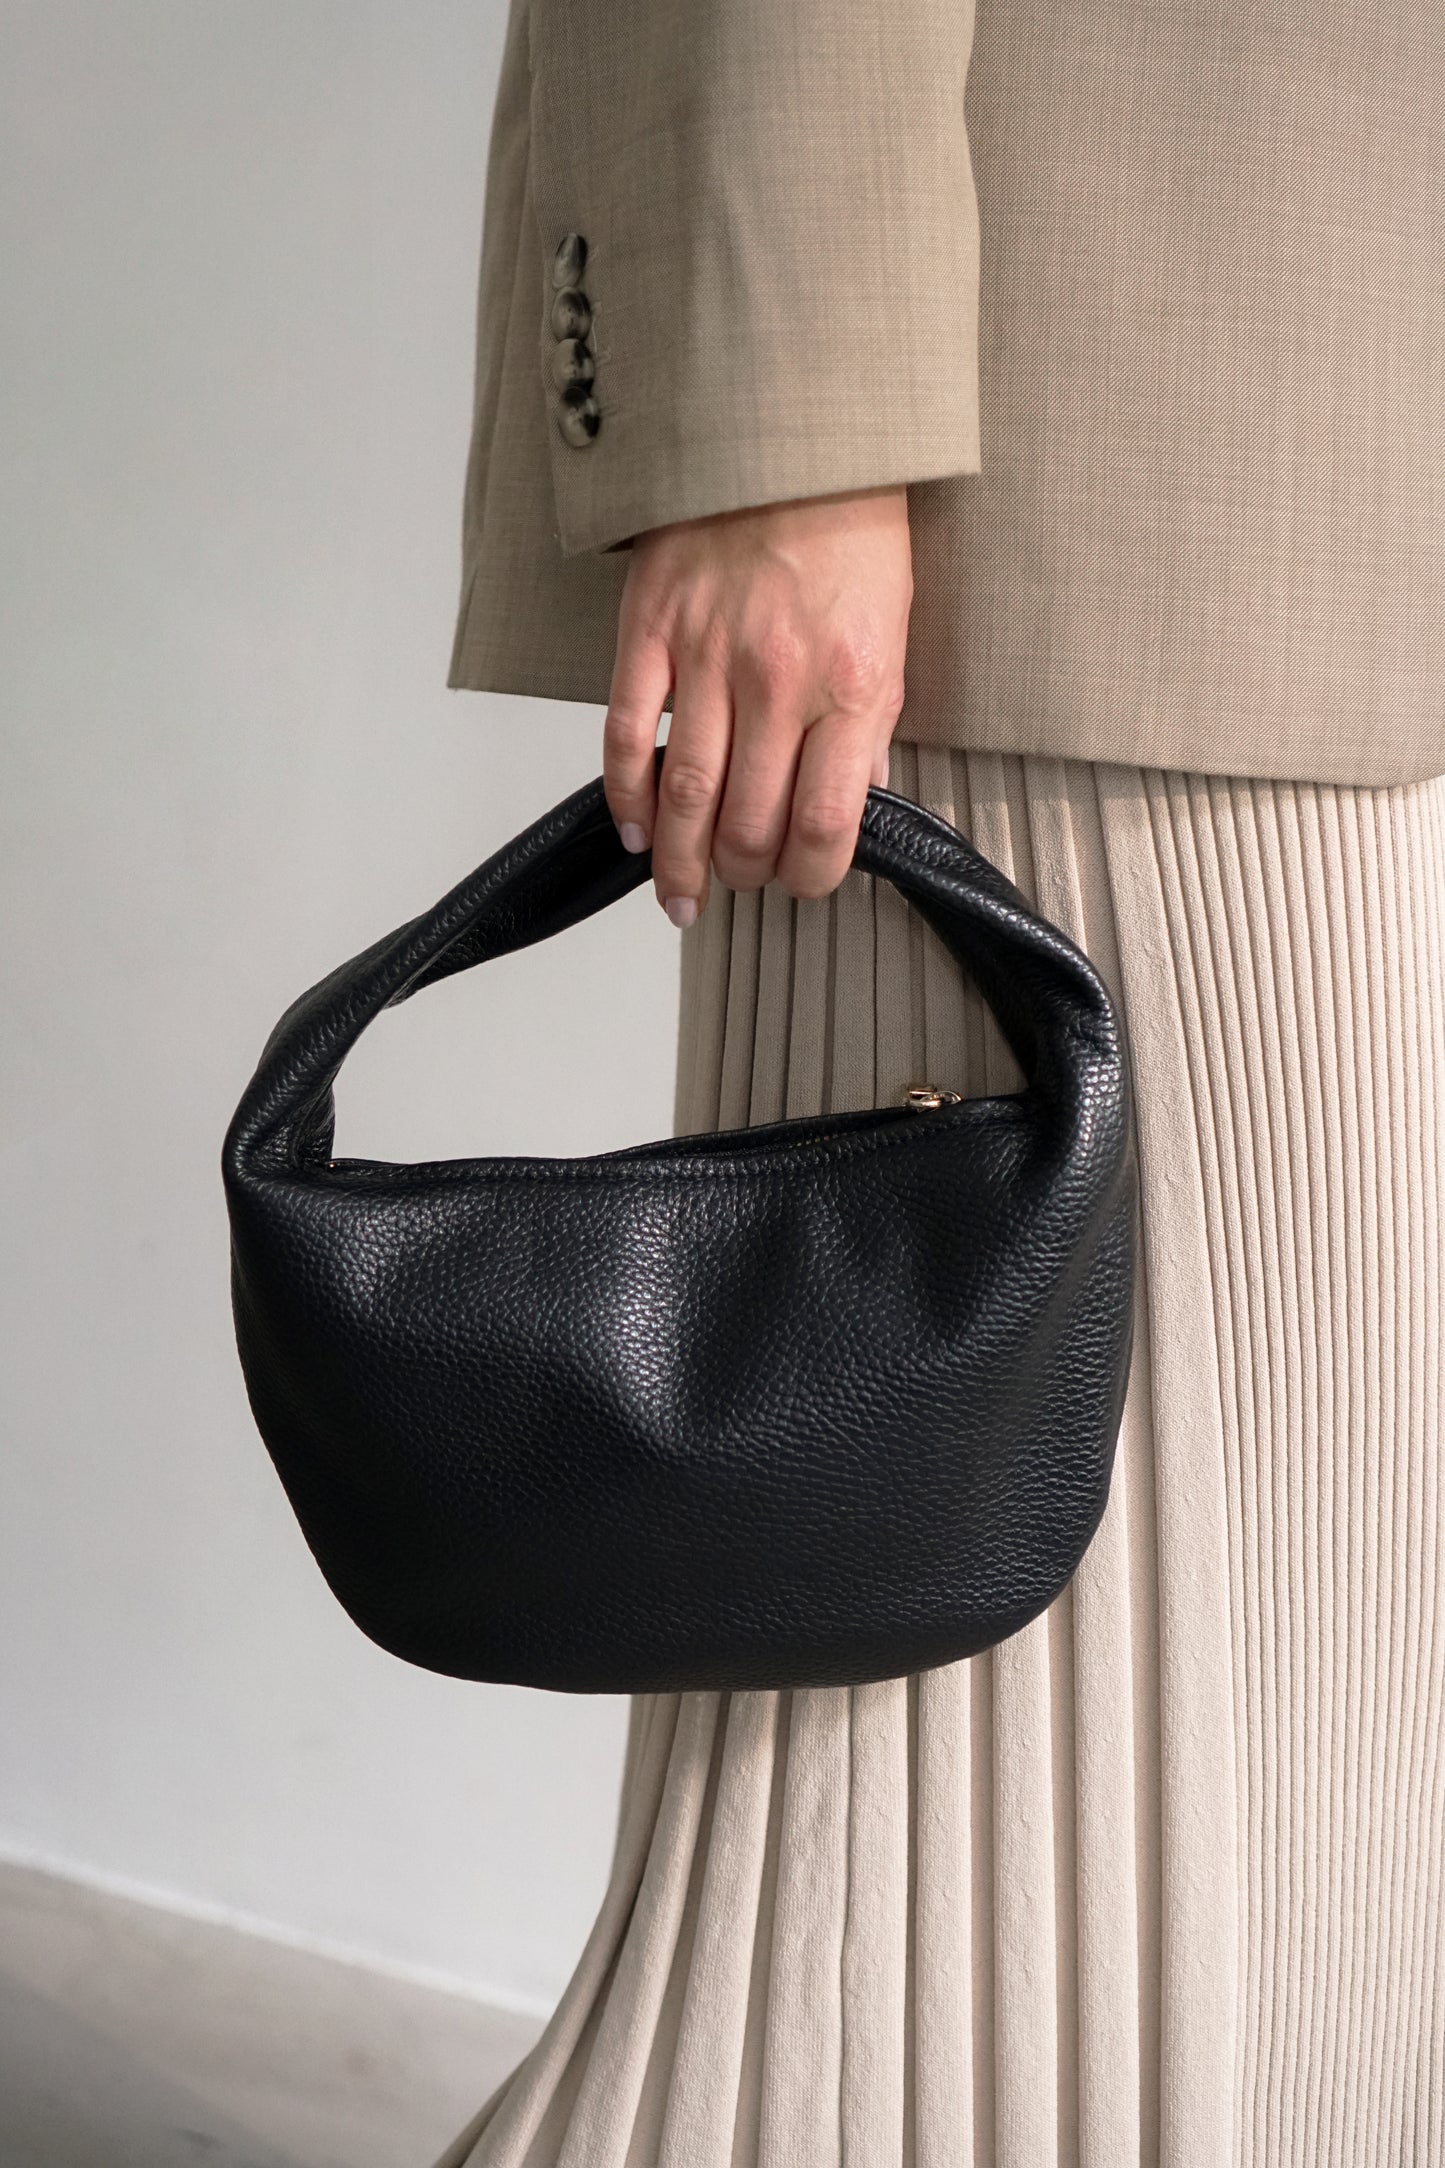 Alva Mini Handbag Leather Black